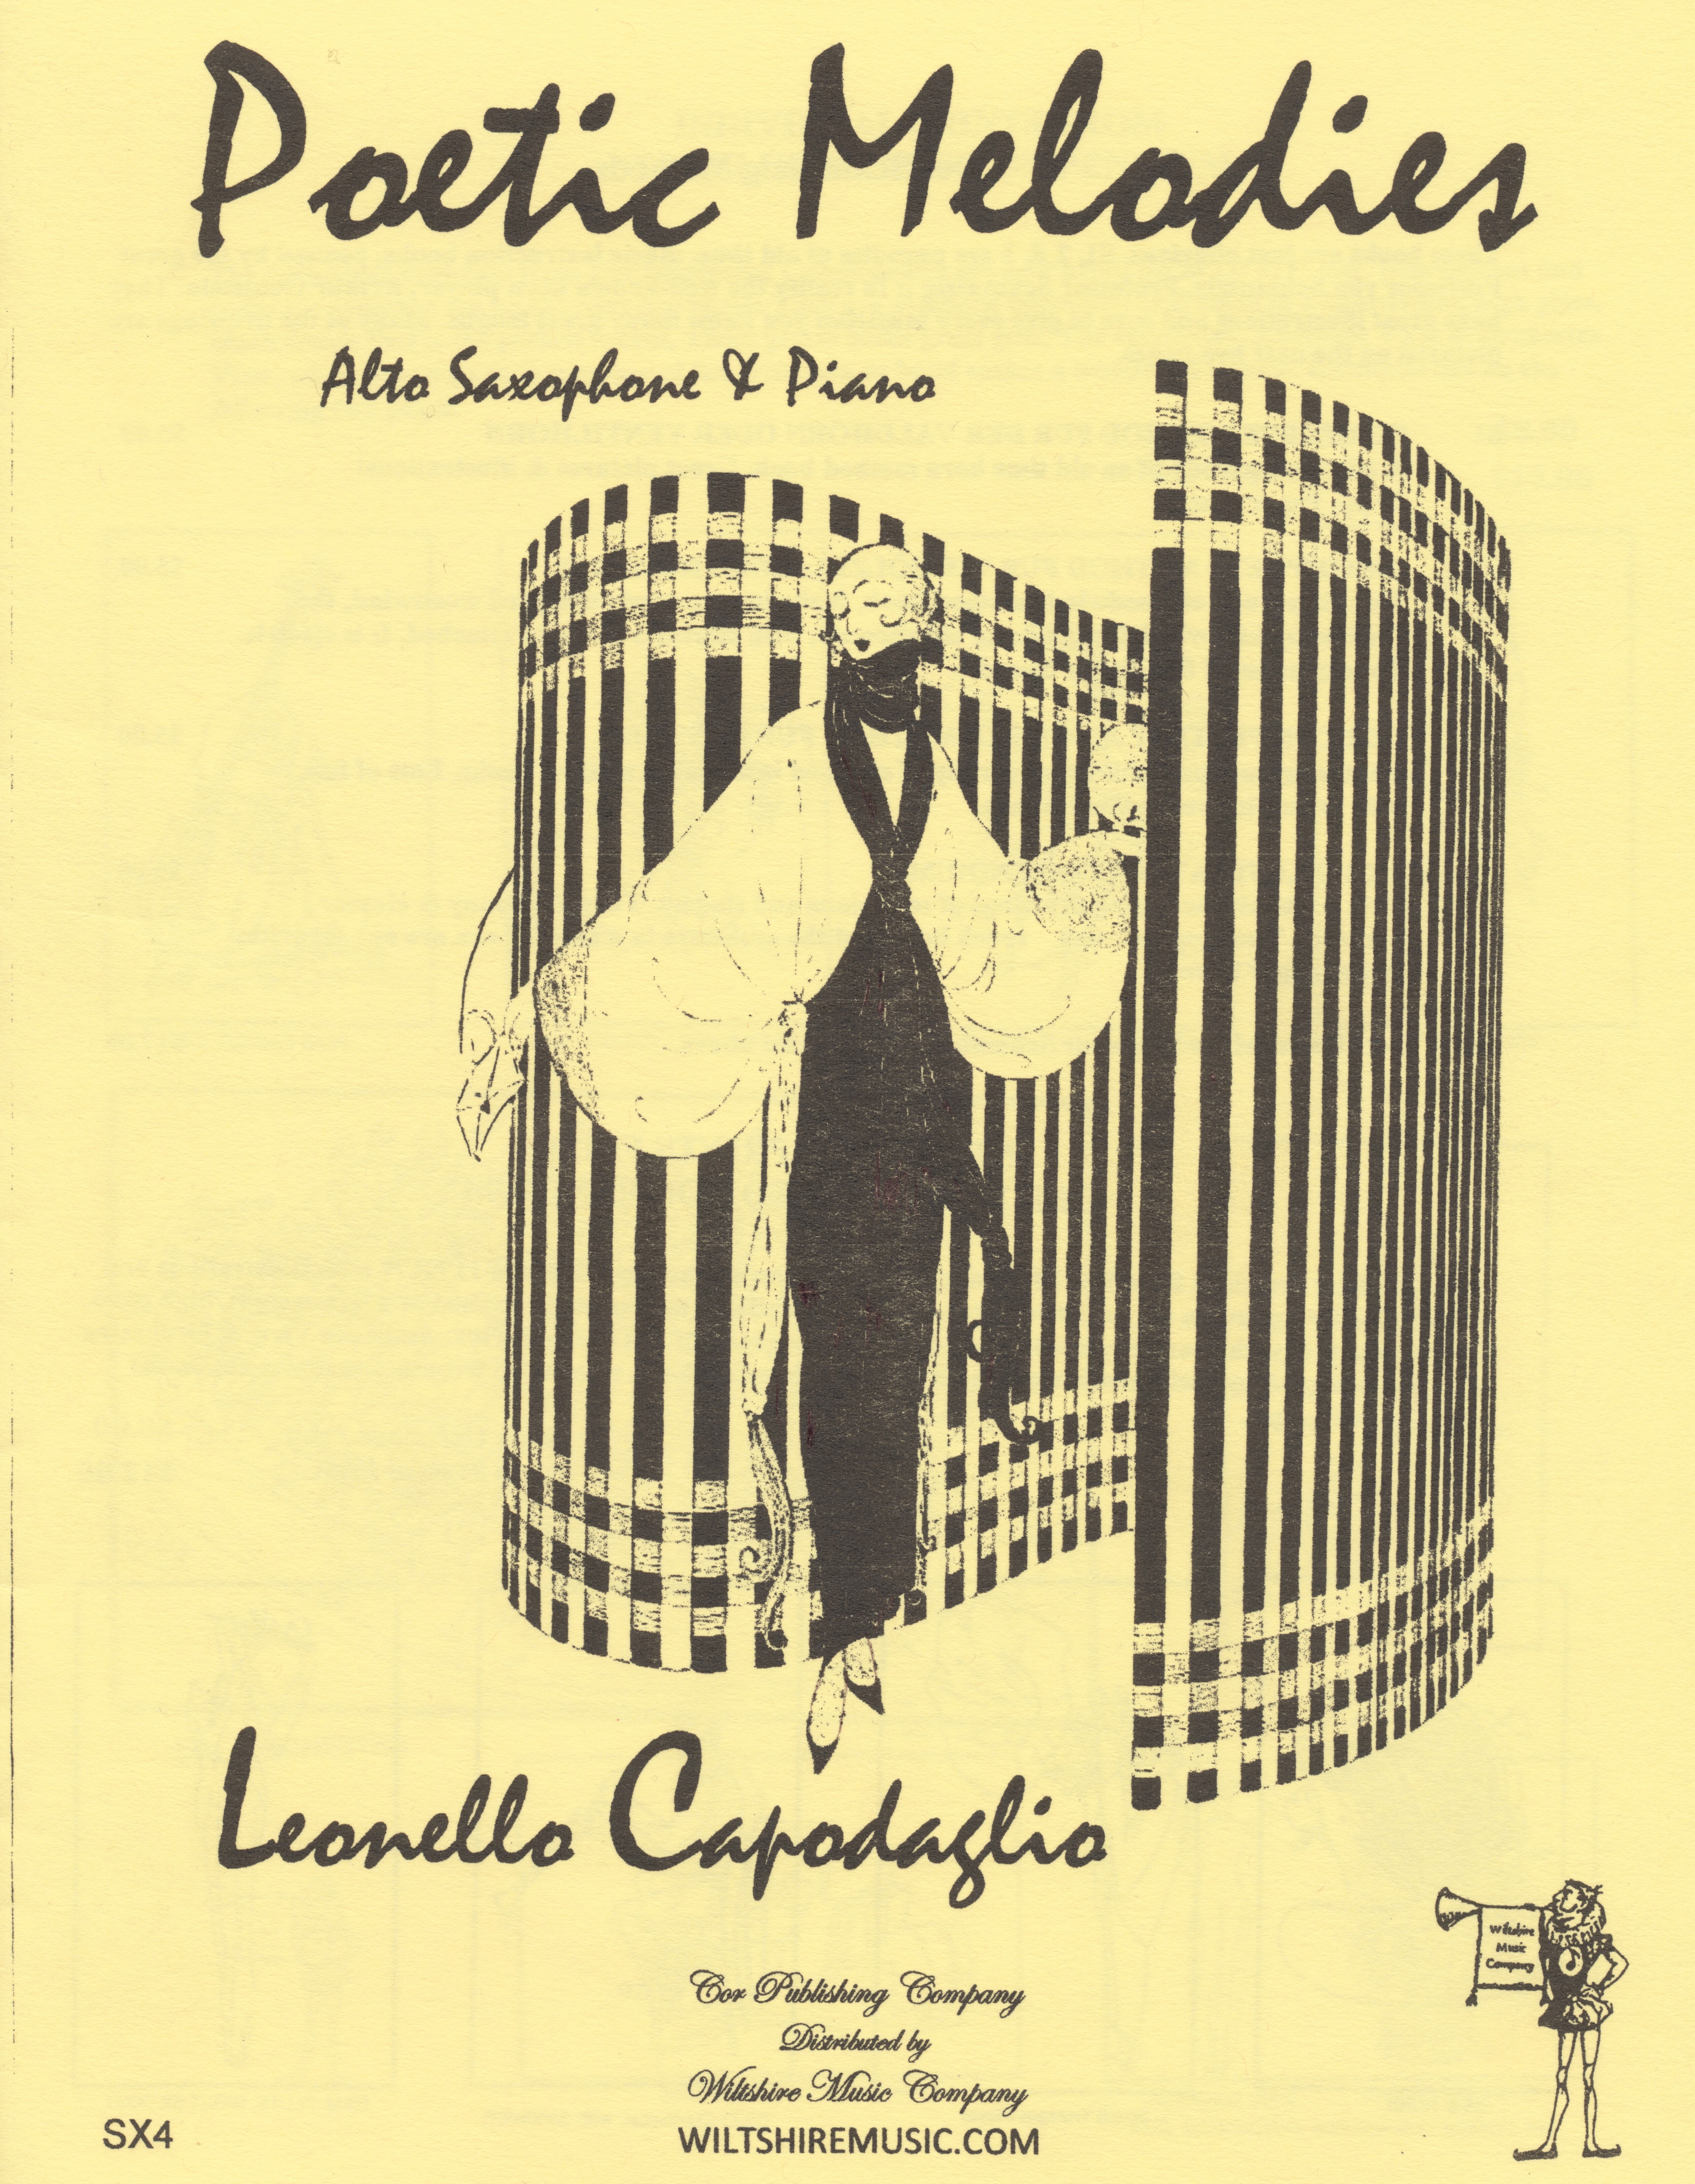 Poetic Melodies, Leonello Capodiaglio